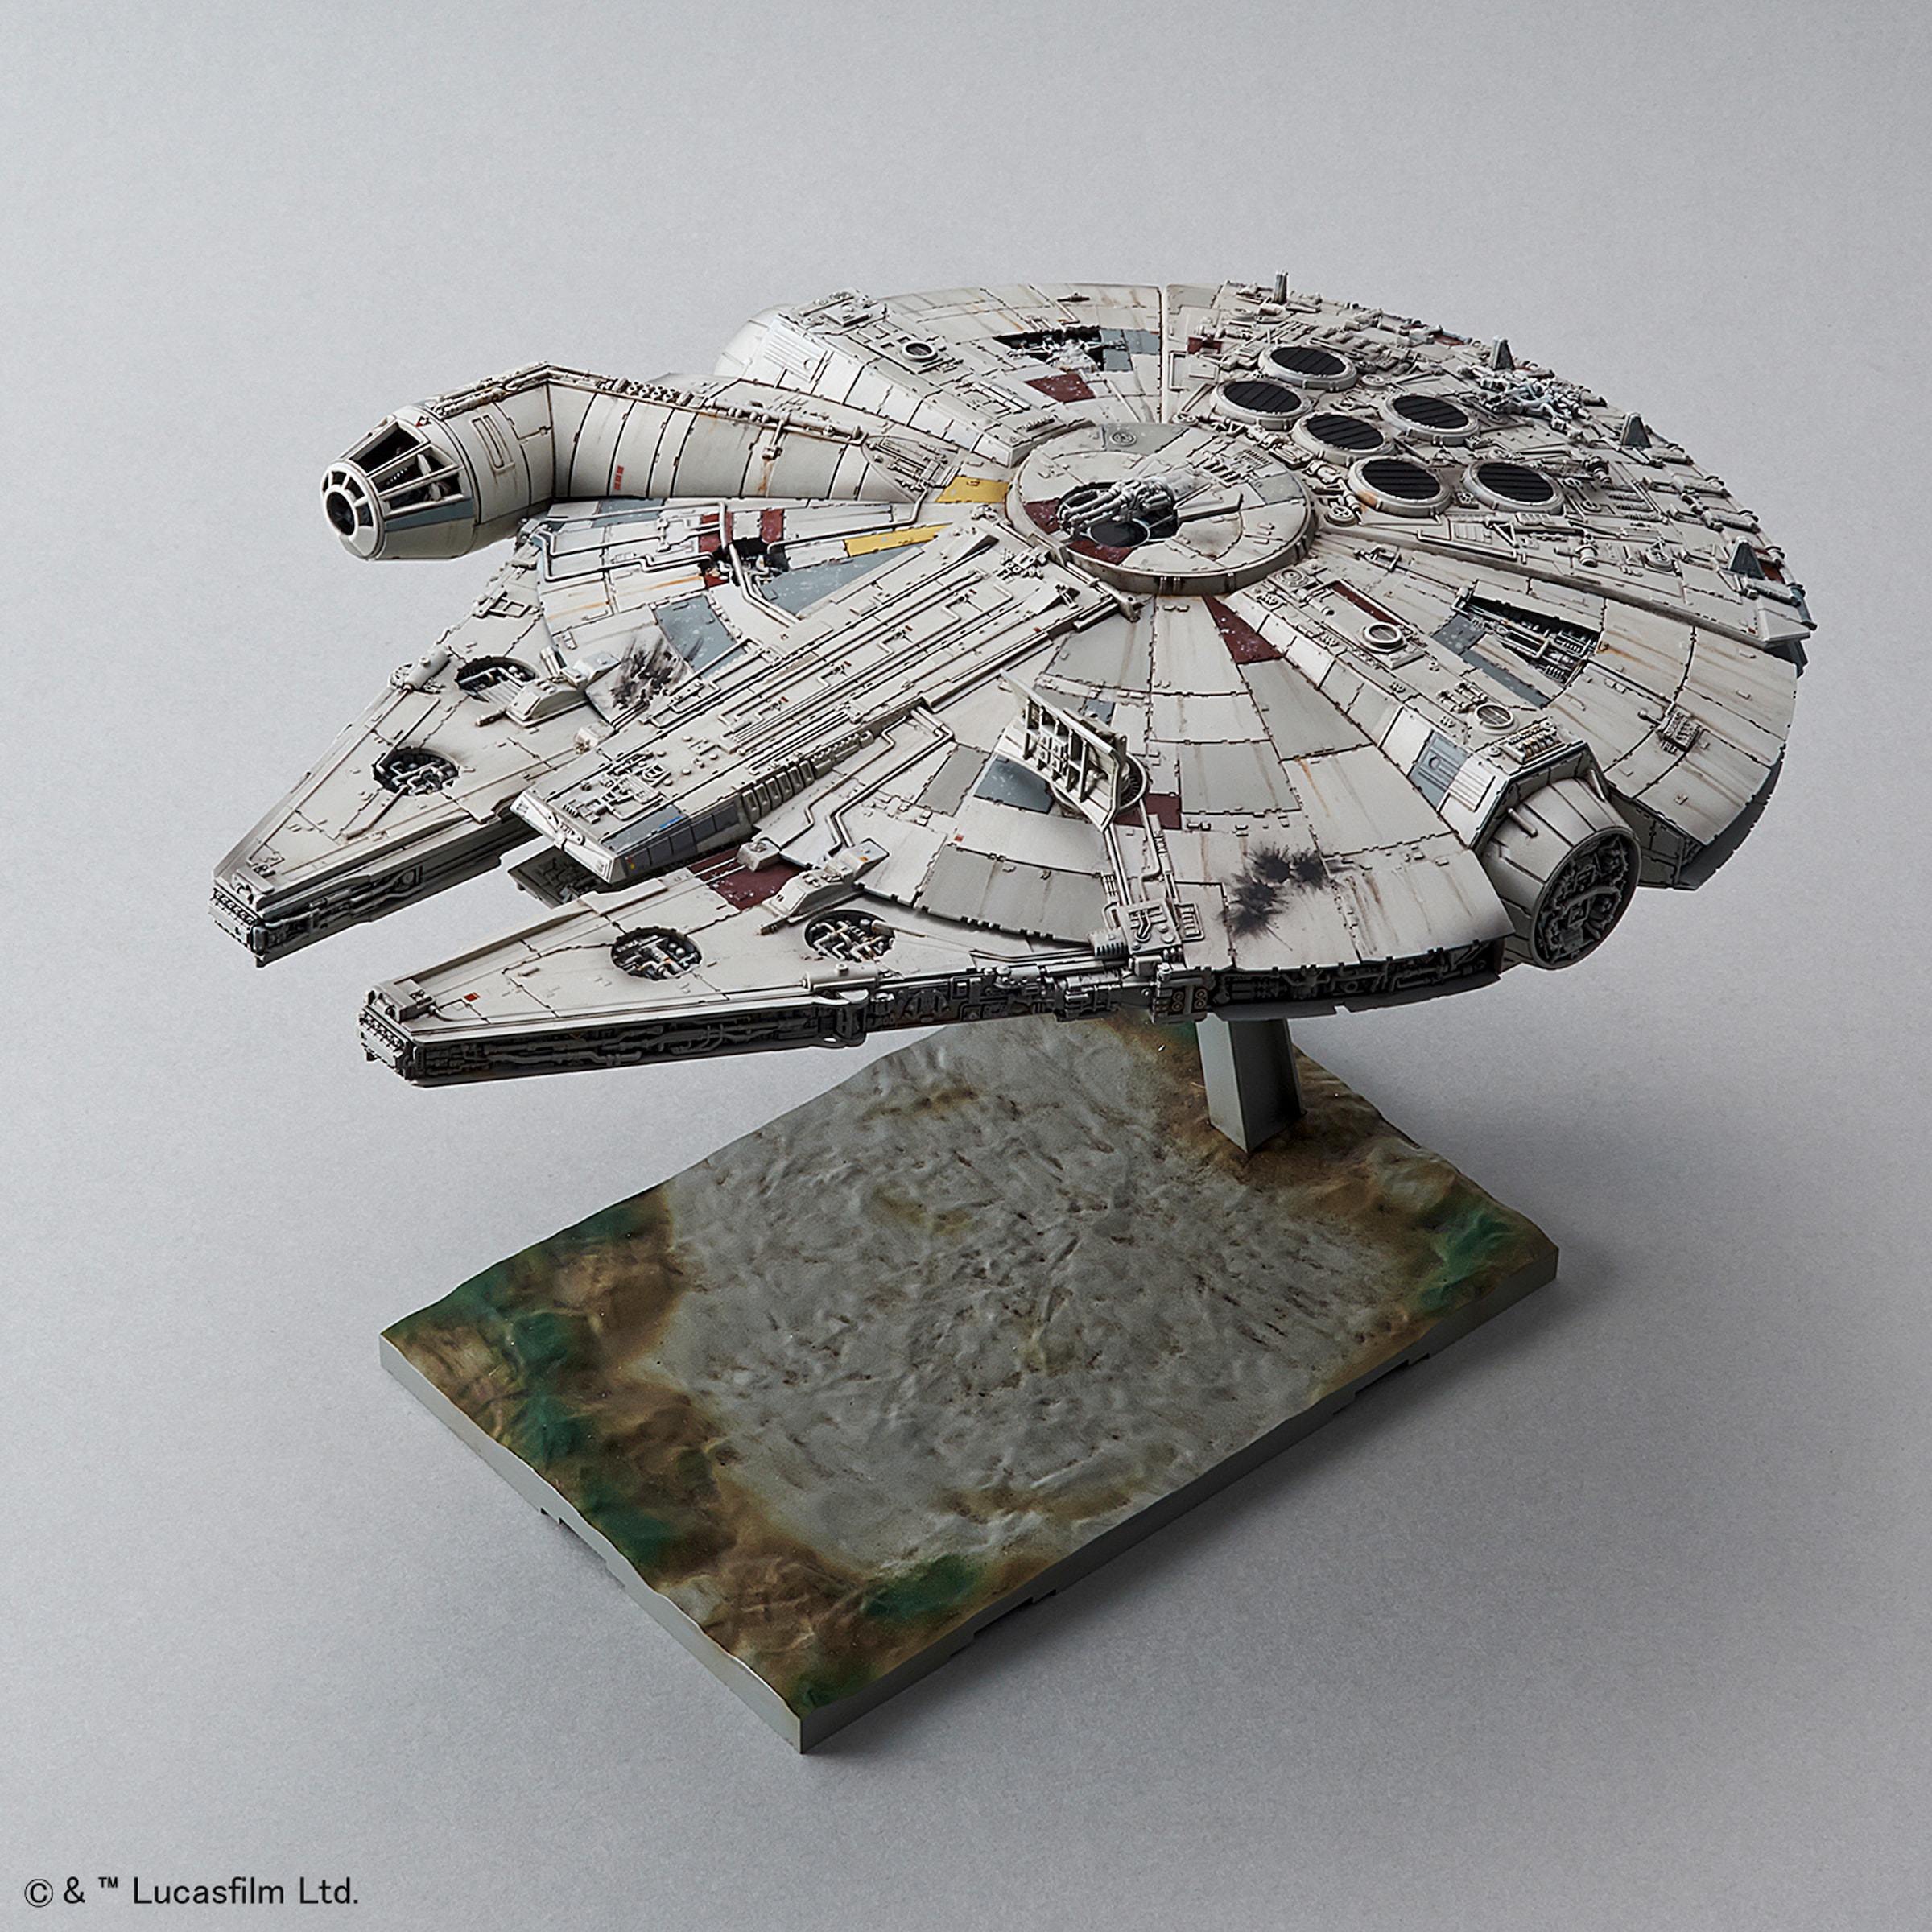 Modellbausatz »Star Wars - Millennium Falcon«, 1:144